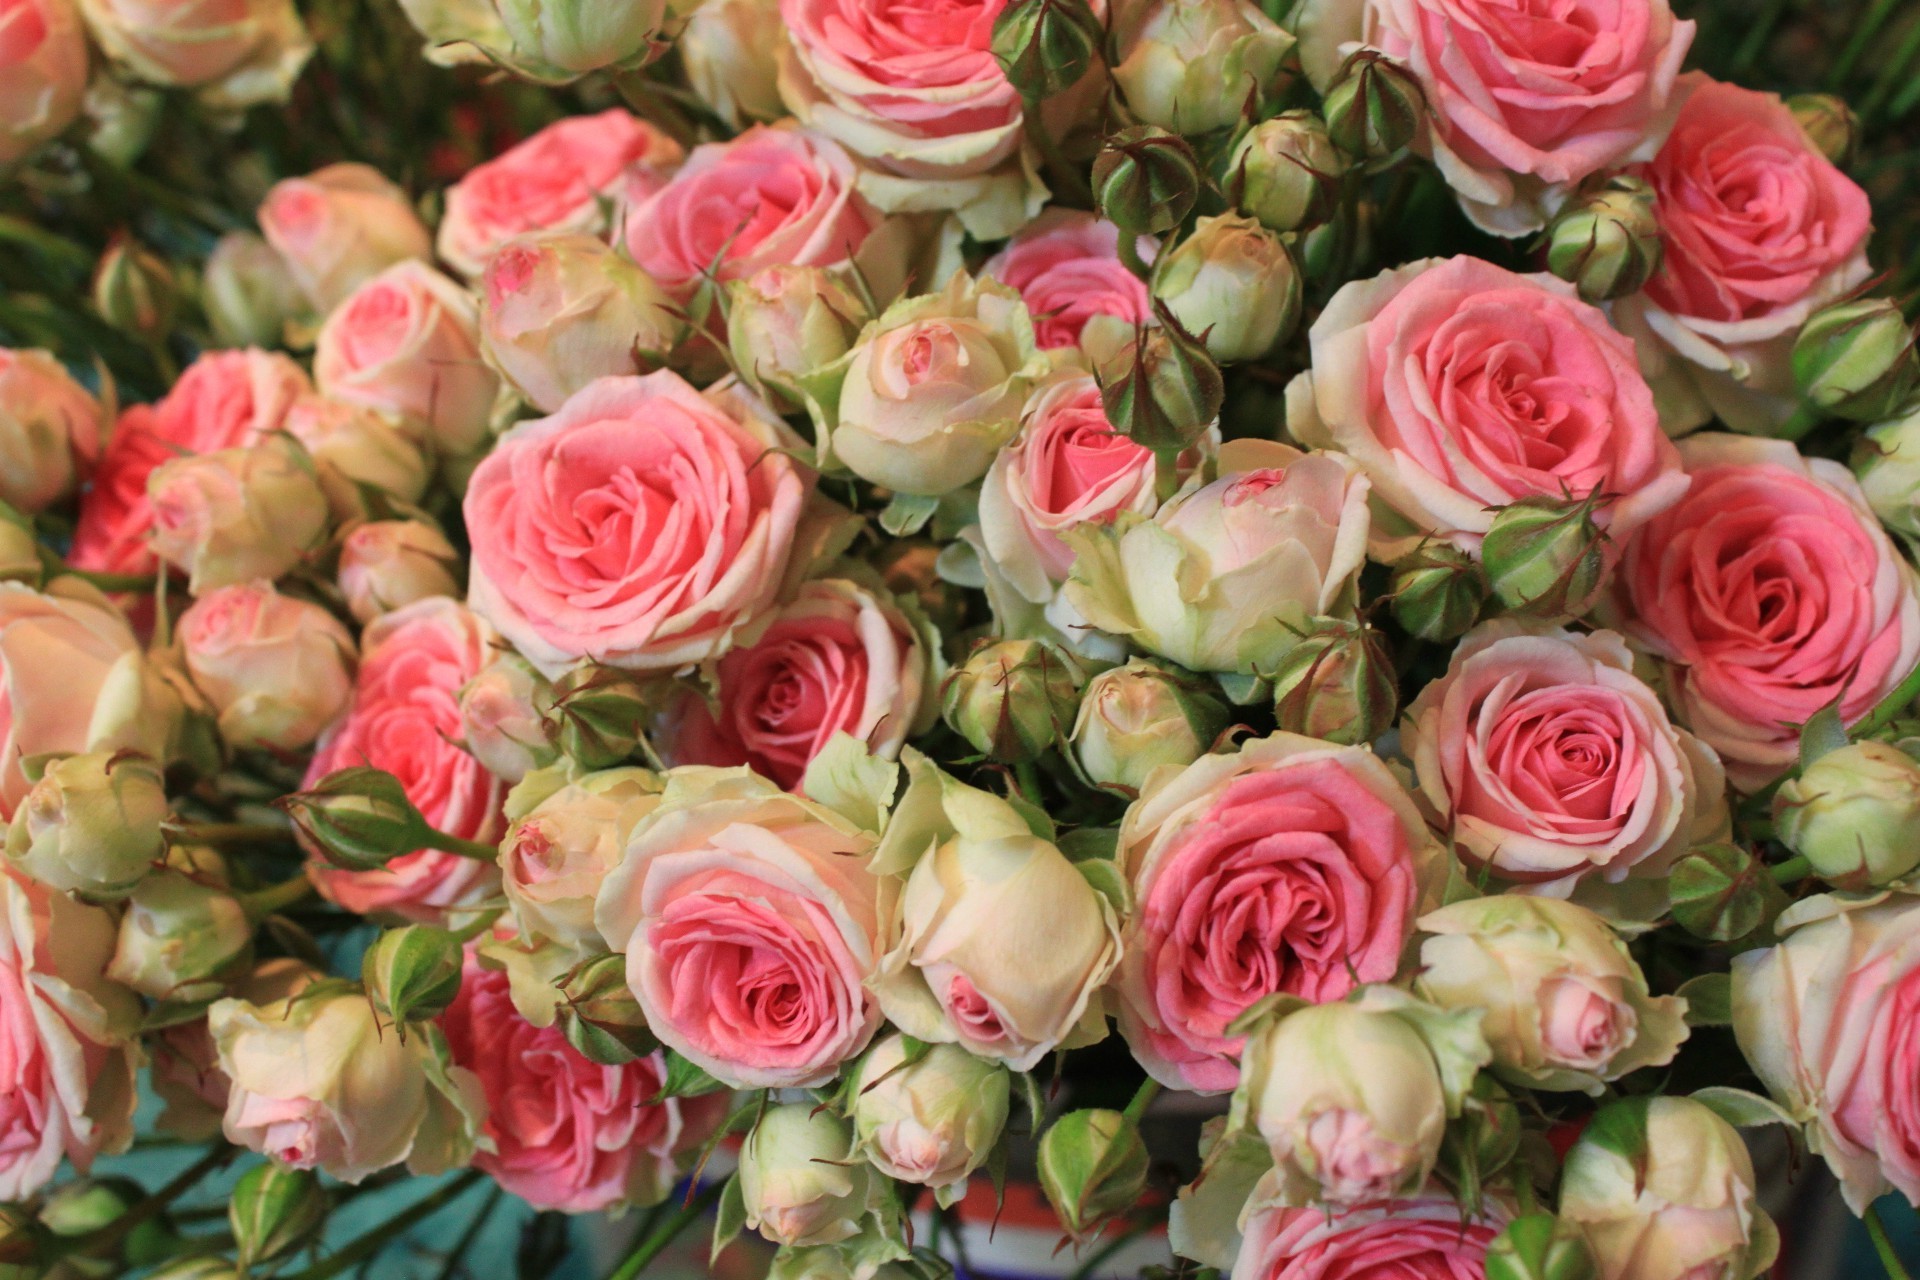 розы букет цветочные расположение цветок свадьба любовь лепесток подарок невеста флора флорист романтика блюминг кластер центральным ботанический украшения брак для новобрачных